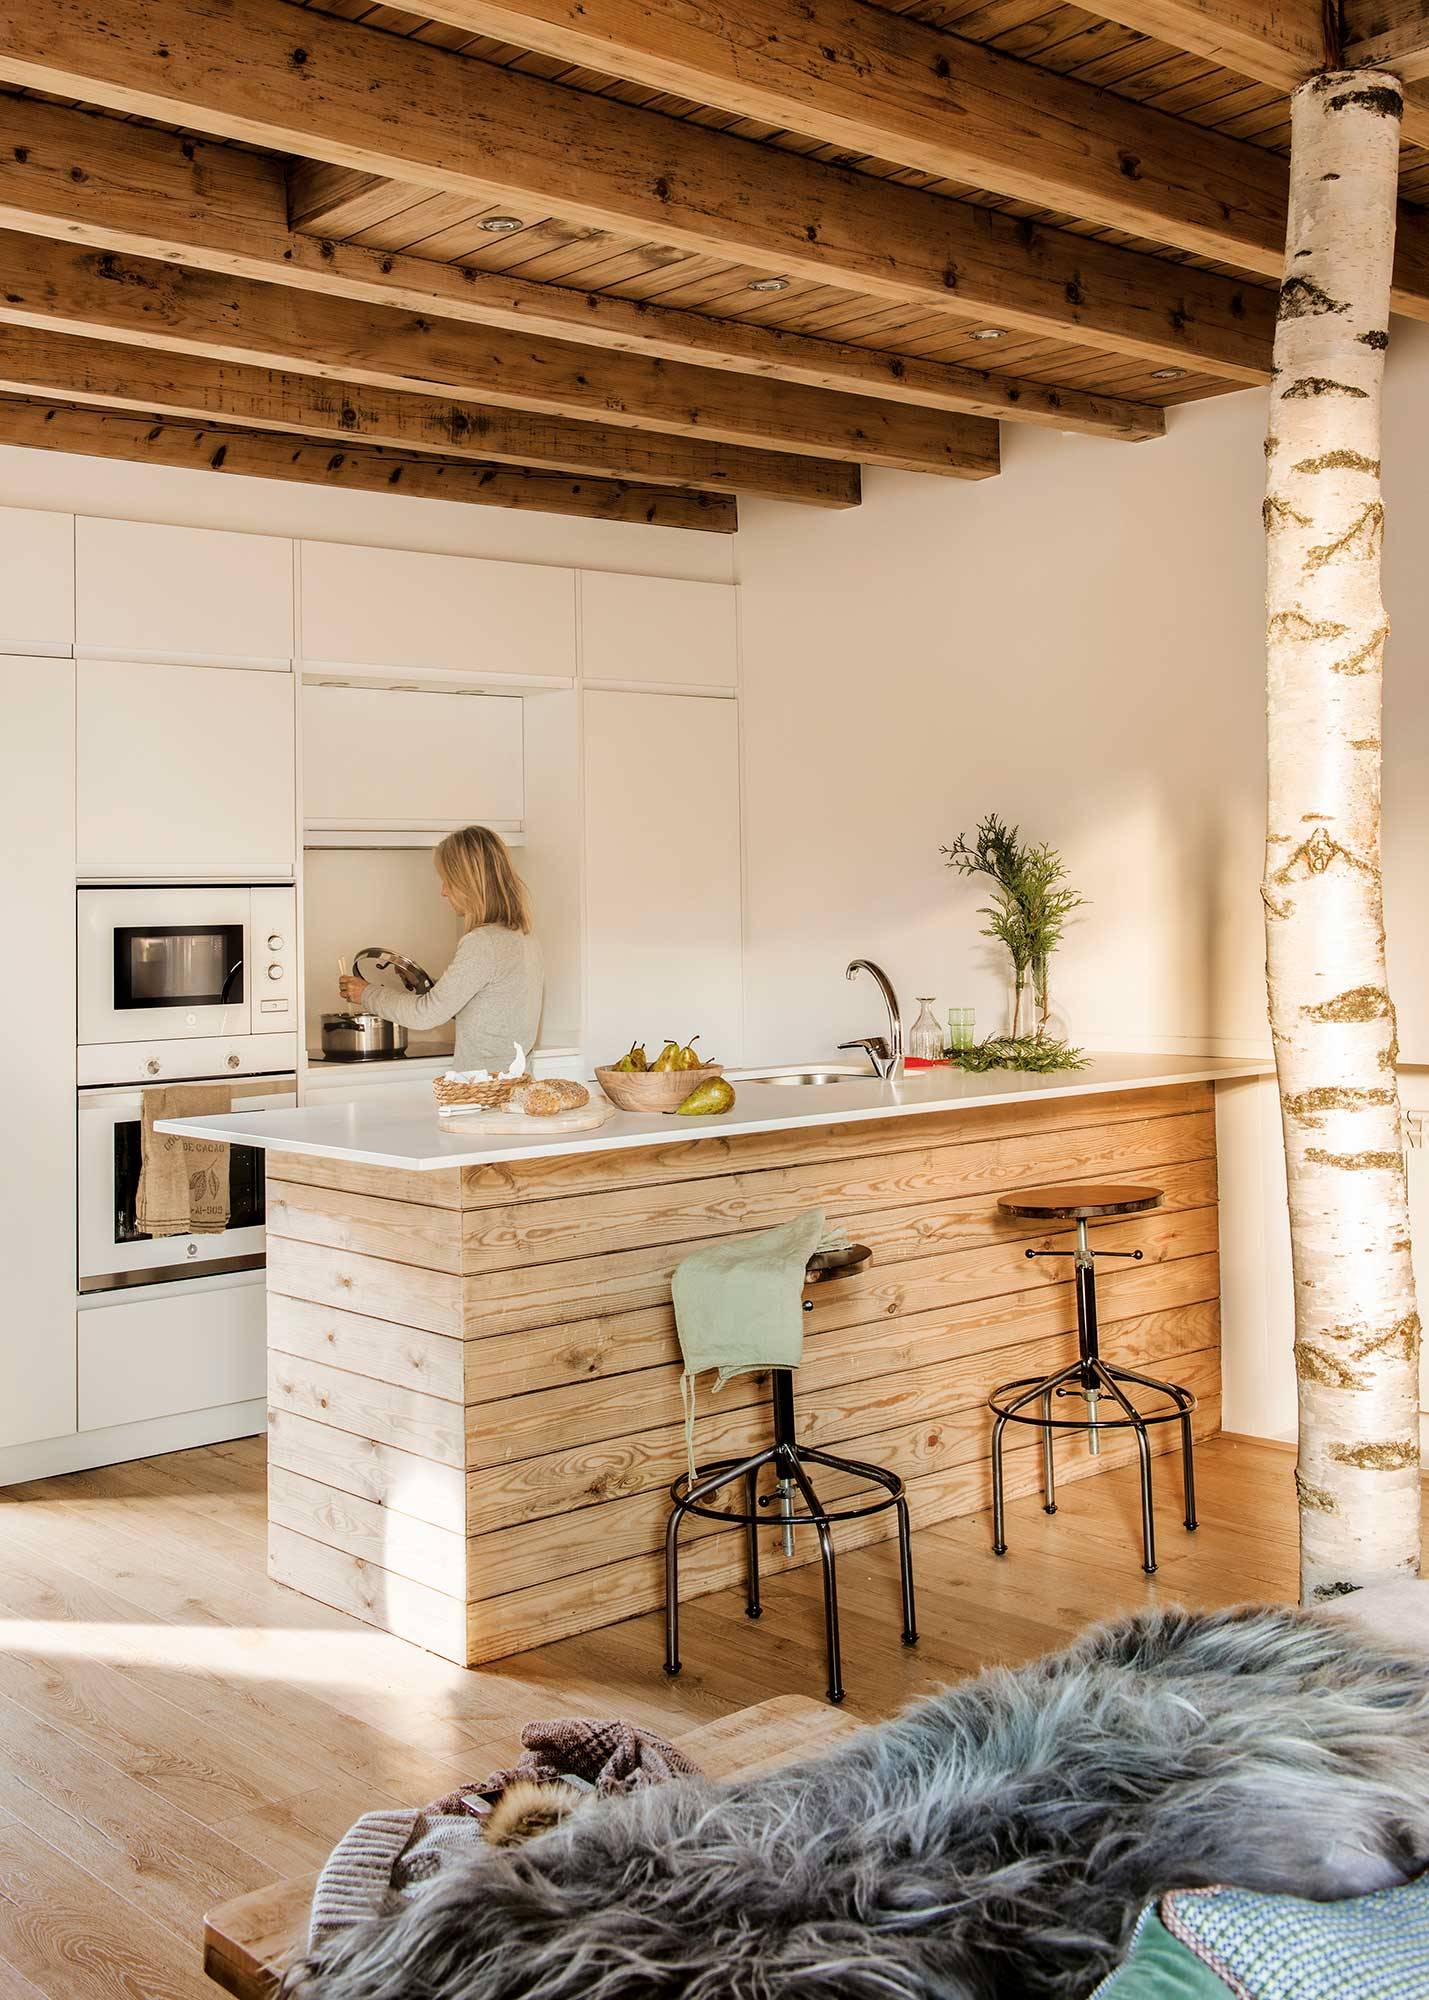 Cómo decorar una cocina moderna blanca y en madera